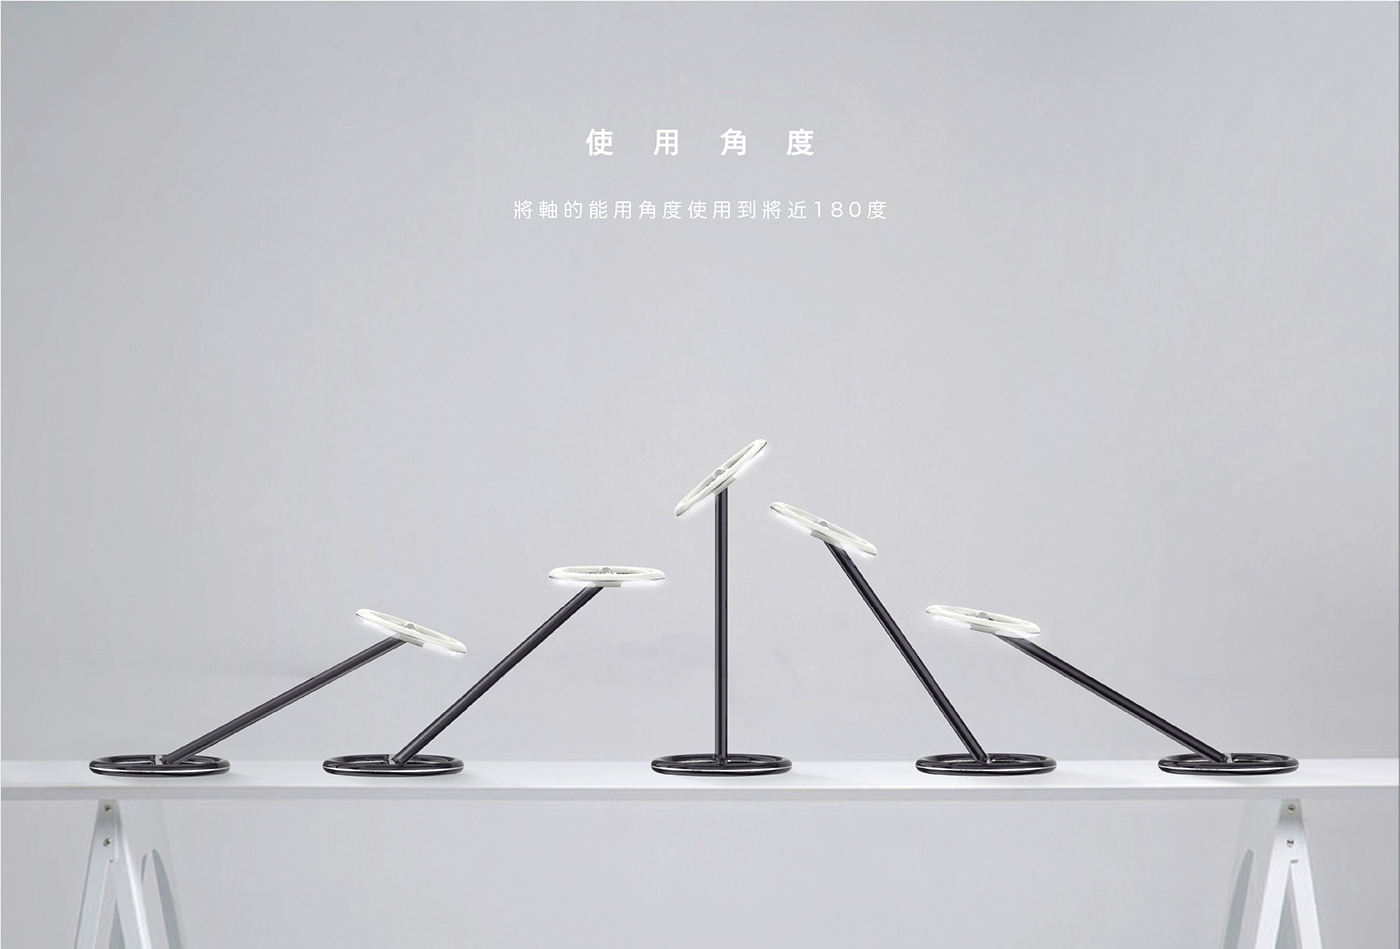 3D desklamp furniture design  industrial light product Render